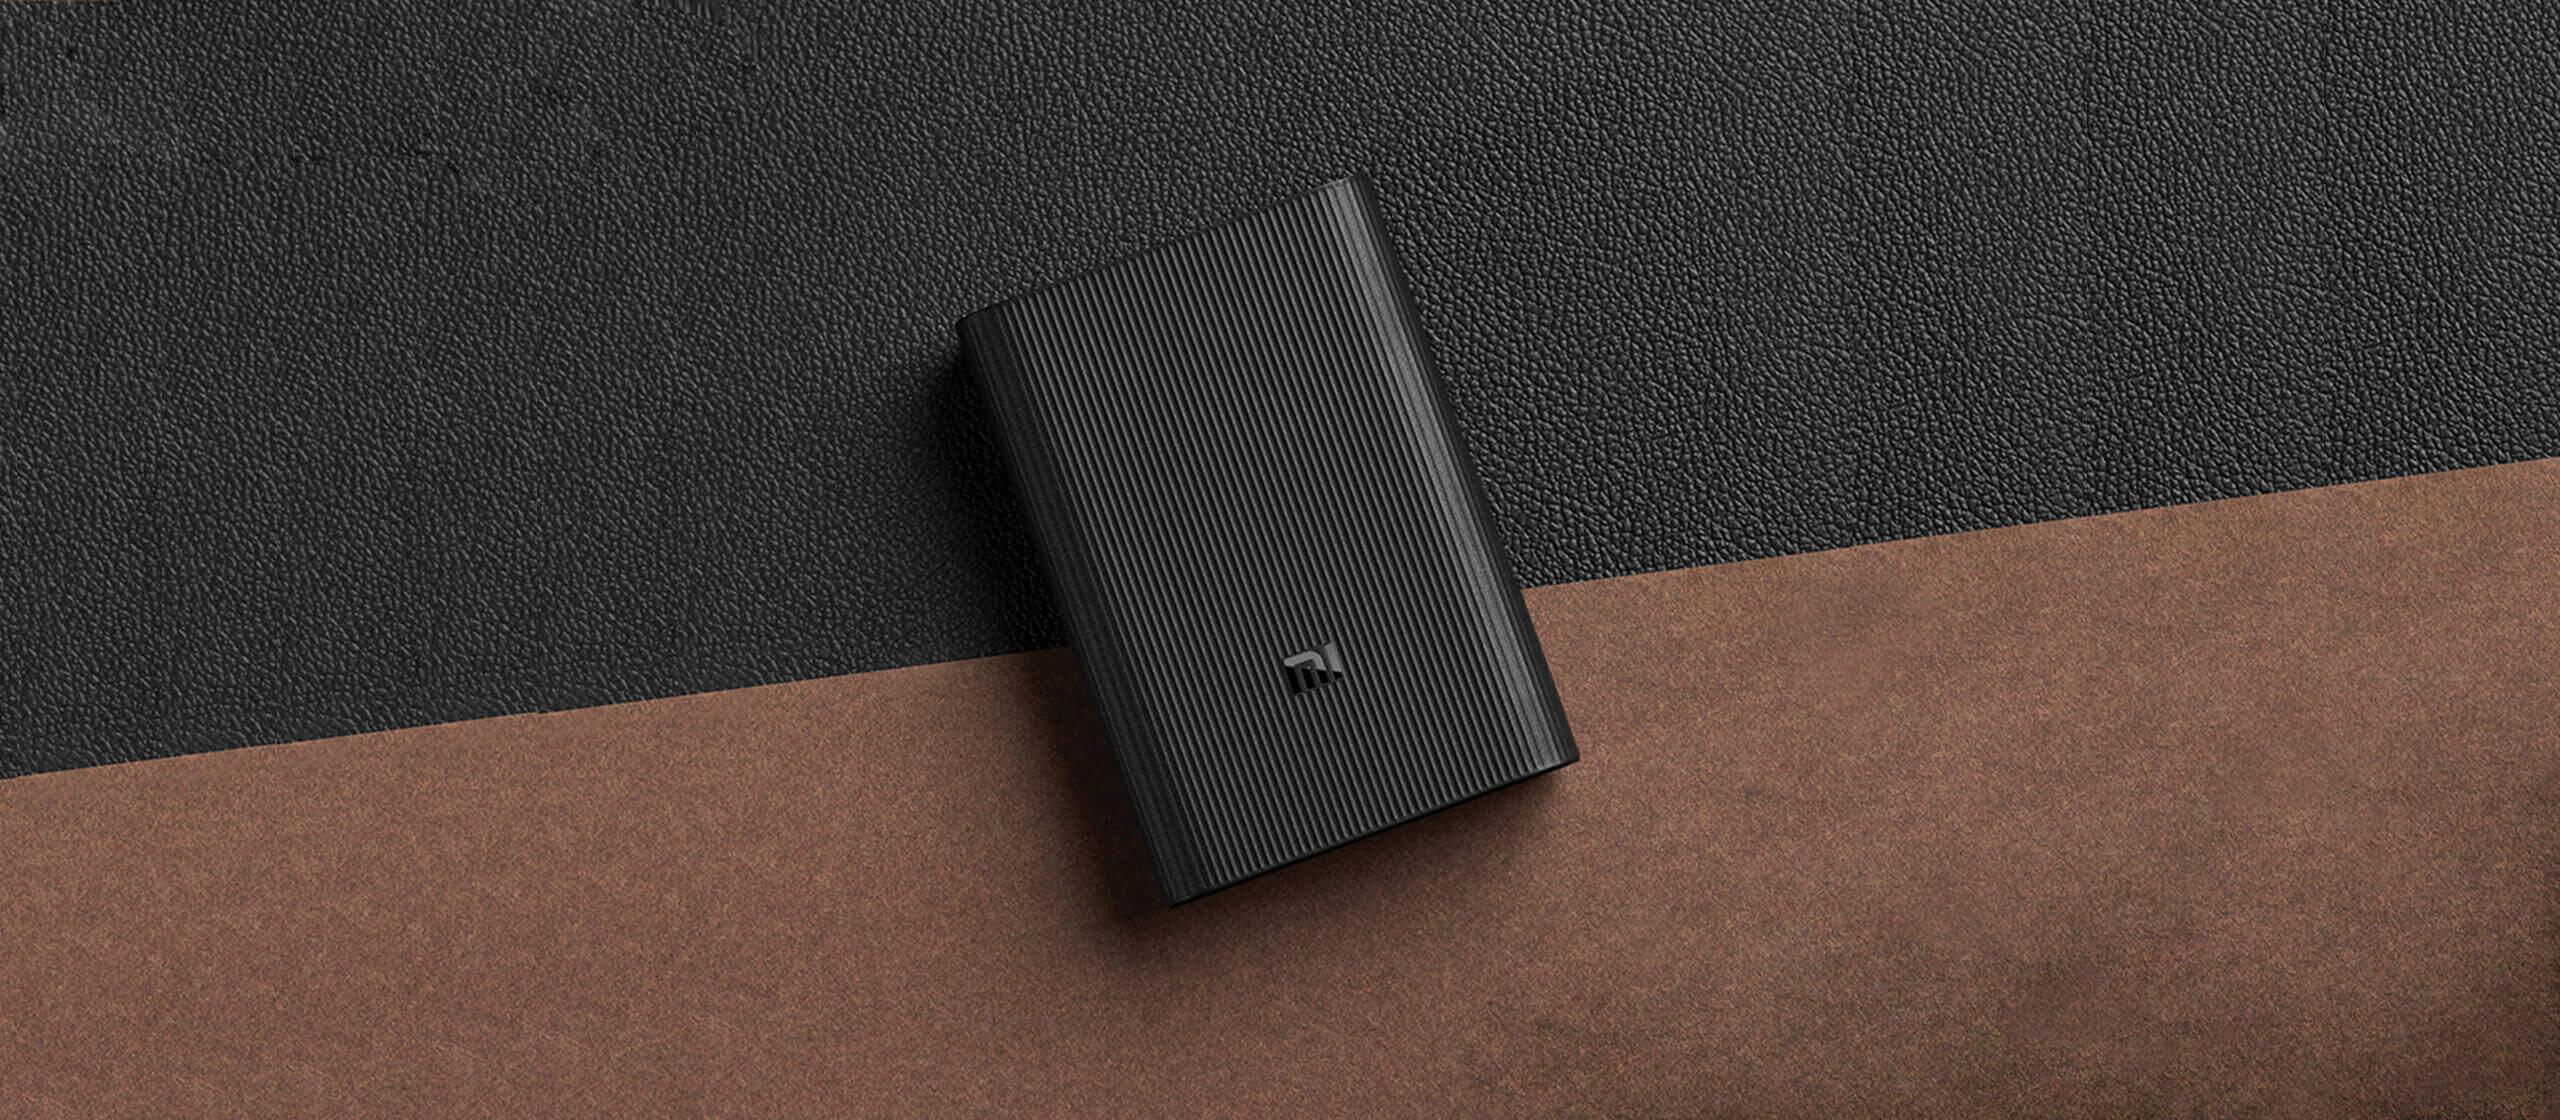 Powerbank Xiaomi Mi Power Bank 3 Ultra Compact - pojemność wystarczająca do trzykrotnego naładowania smartfona